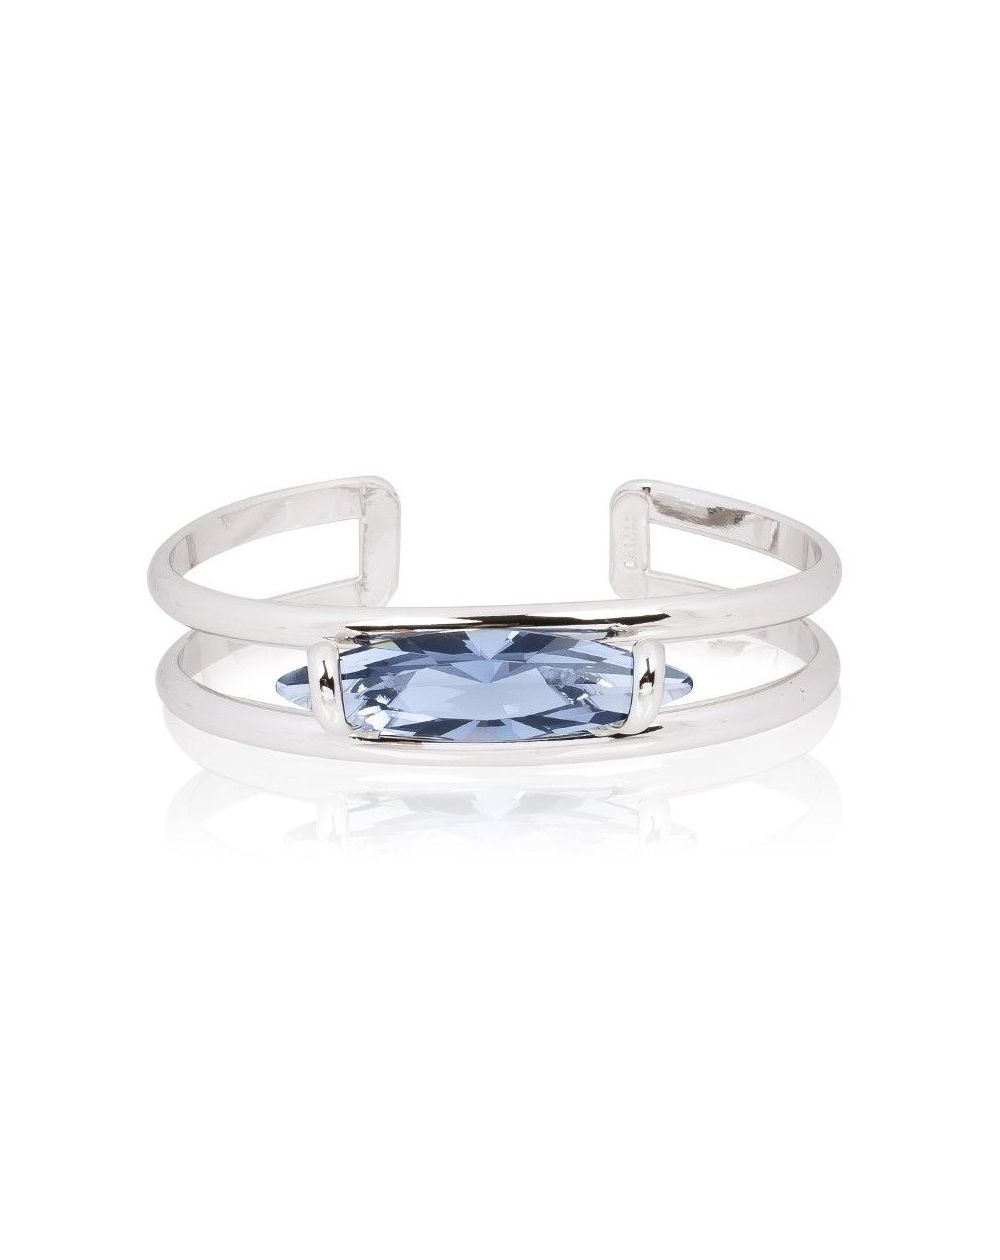 Andrea Marazzini bijoux - Bracelet cristal Swarovski Navette Denim Blue